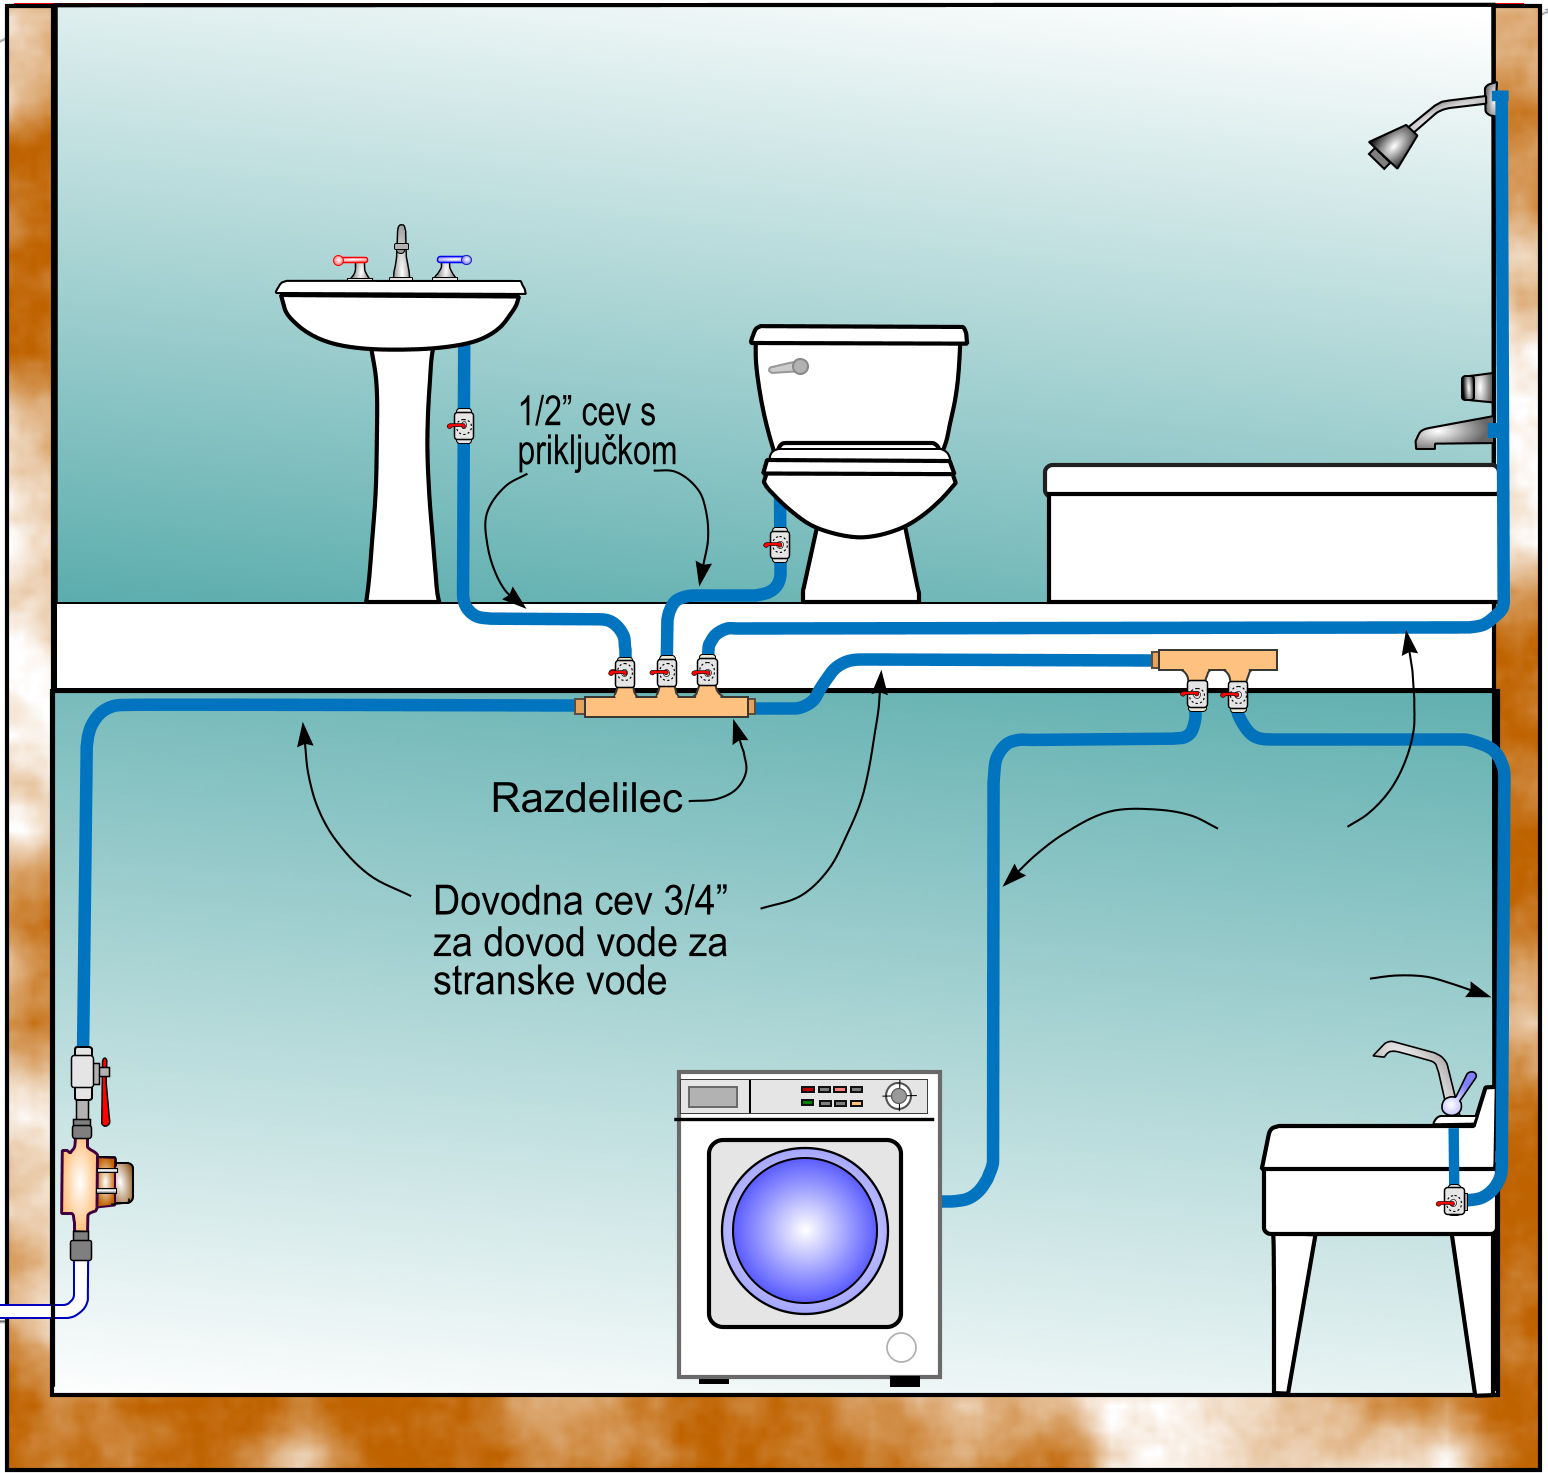 Podsistemi sistemi so zasnovani tako, da varčujejo z vročo vodo-